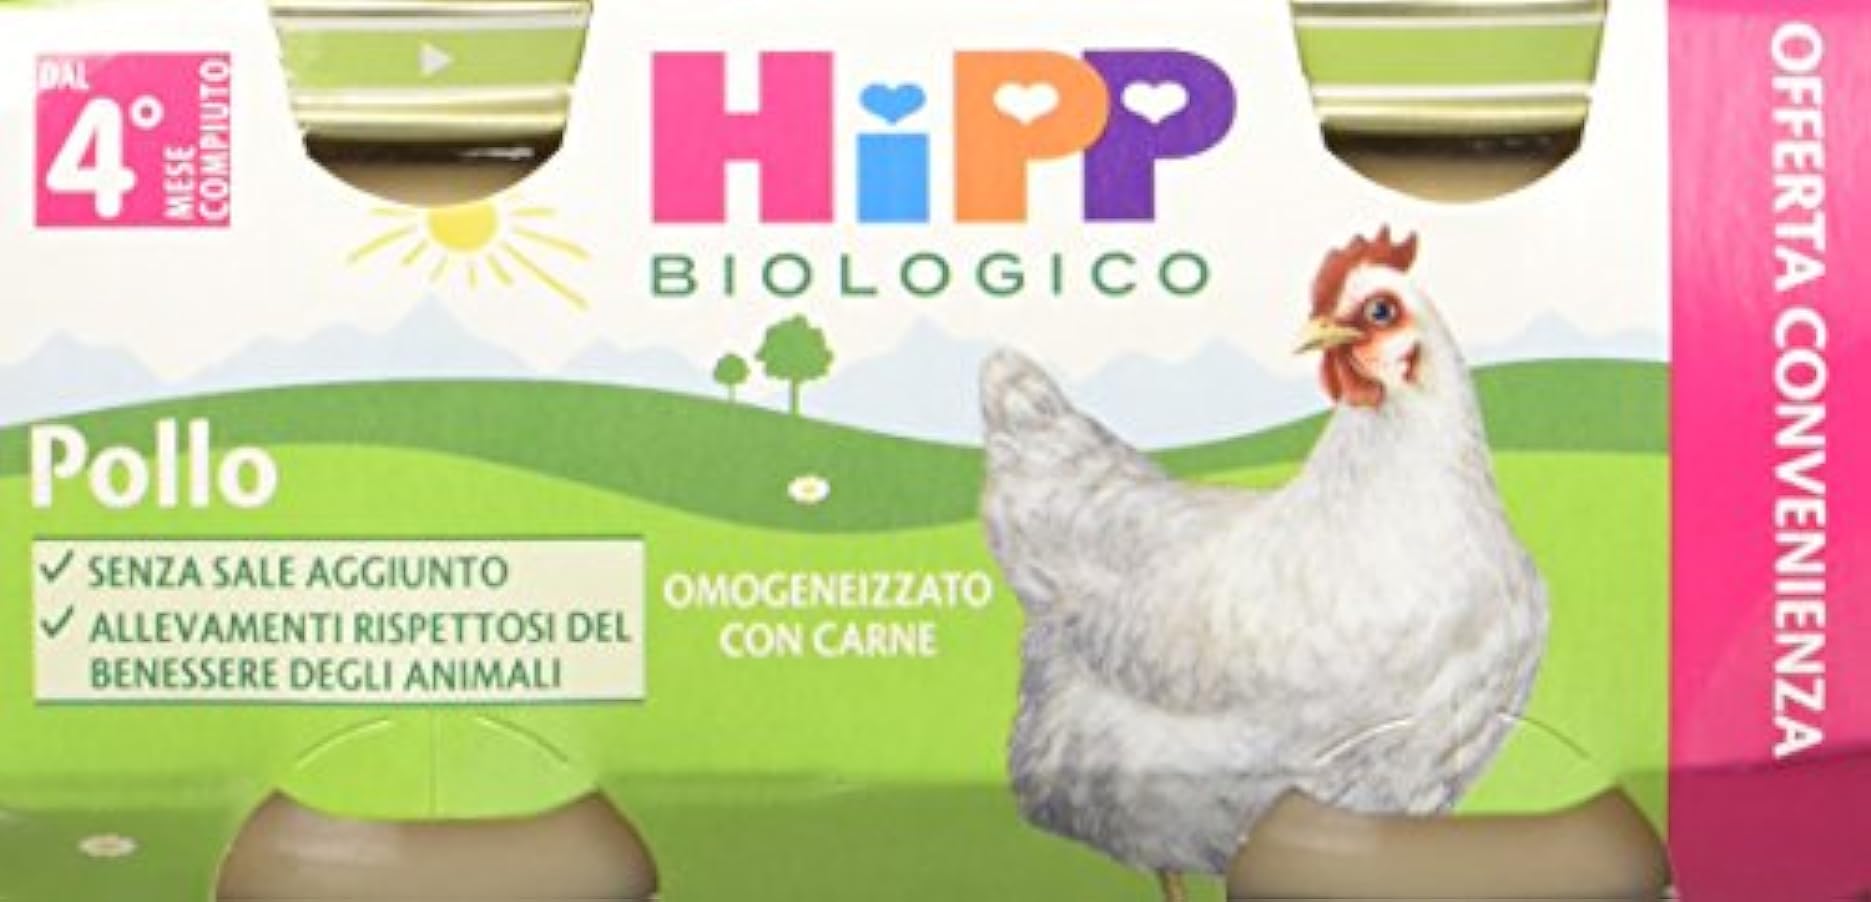 Hipp Omogeneizzatogeneizzato Pollo - 24 vasetti da 80 g